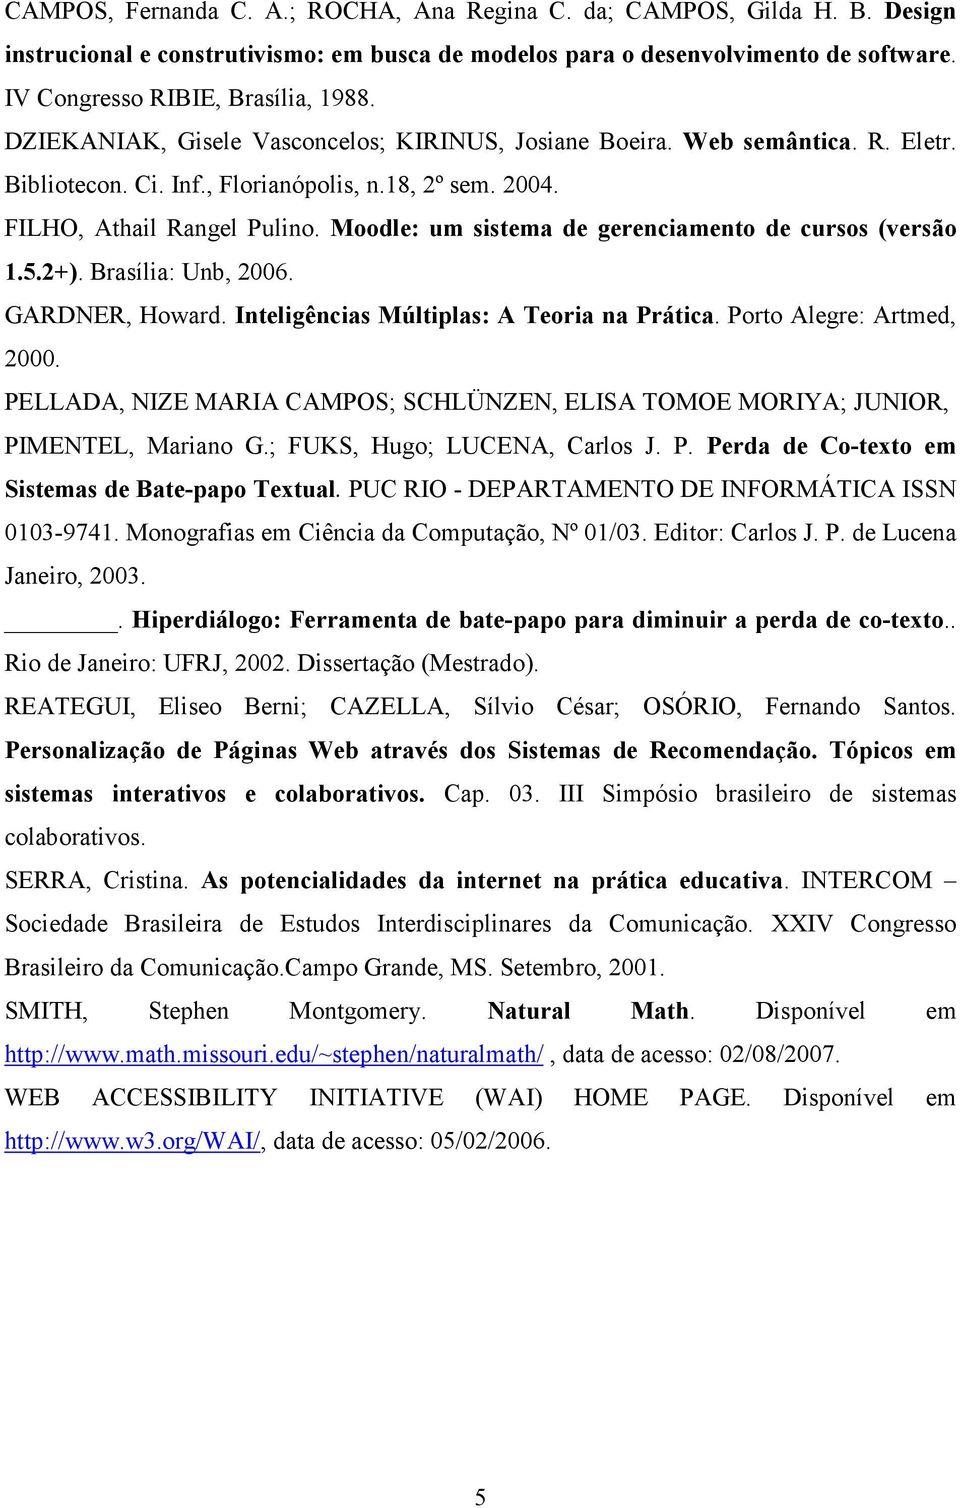 Moodle: um sistema de gerenciamento de cursos (versão 1.5.2+). Brasília: Unb, 2006. GARDNER, Howard. Inteligências Múltiplas: A Teoria na Prática. Porto Alegre: Artmed, 2000.